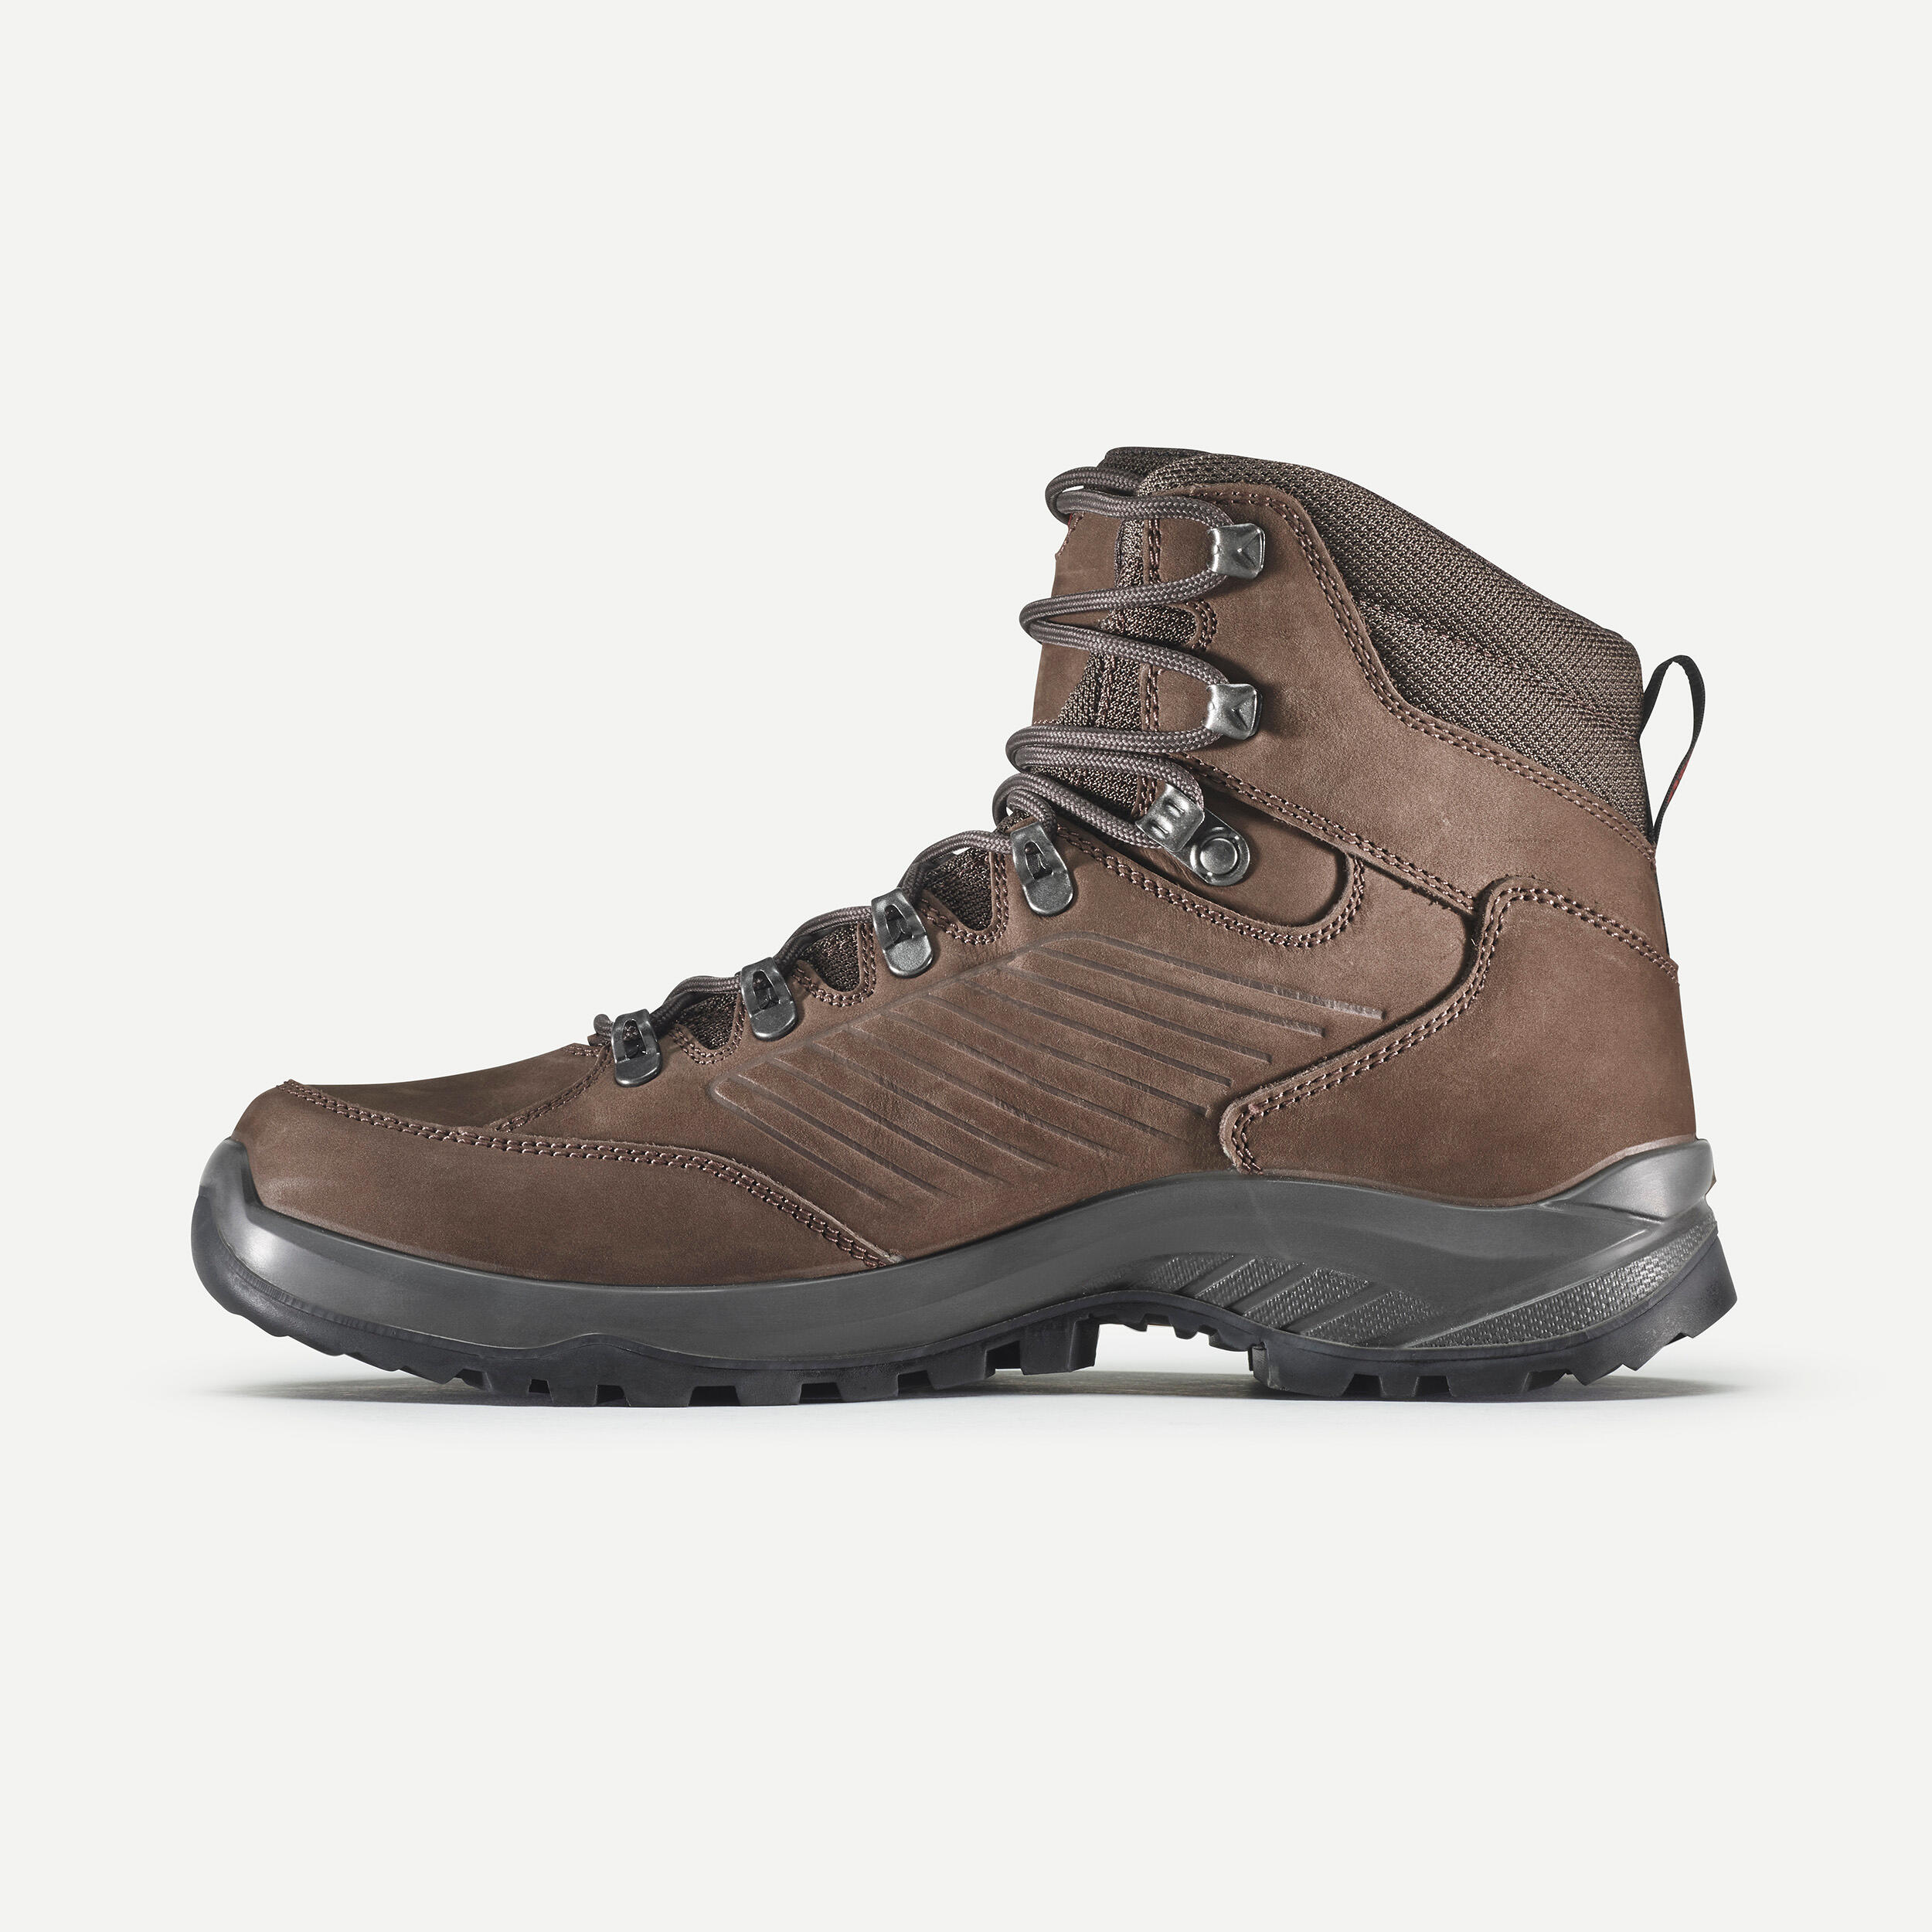 Men's waterproof hiking boots - Technica Torena Gore-Tex 3/6